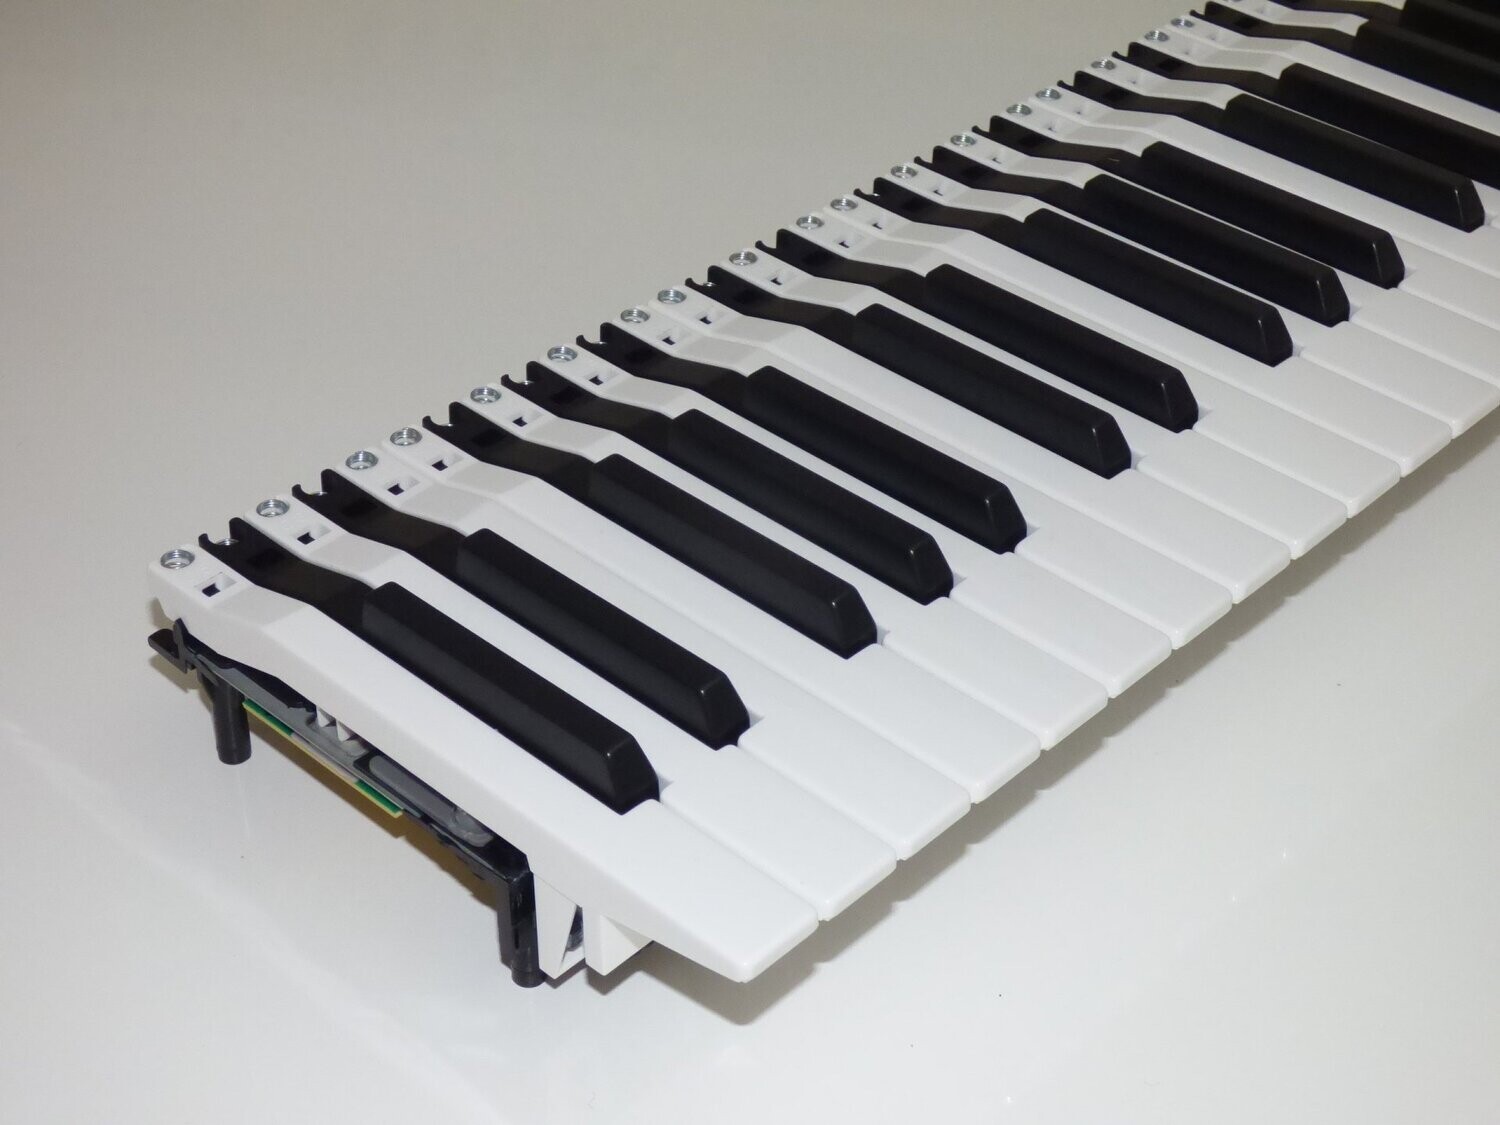 Klaviaturen mit MIDI-Elektronik (4 x Fatar 8L)